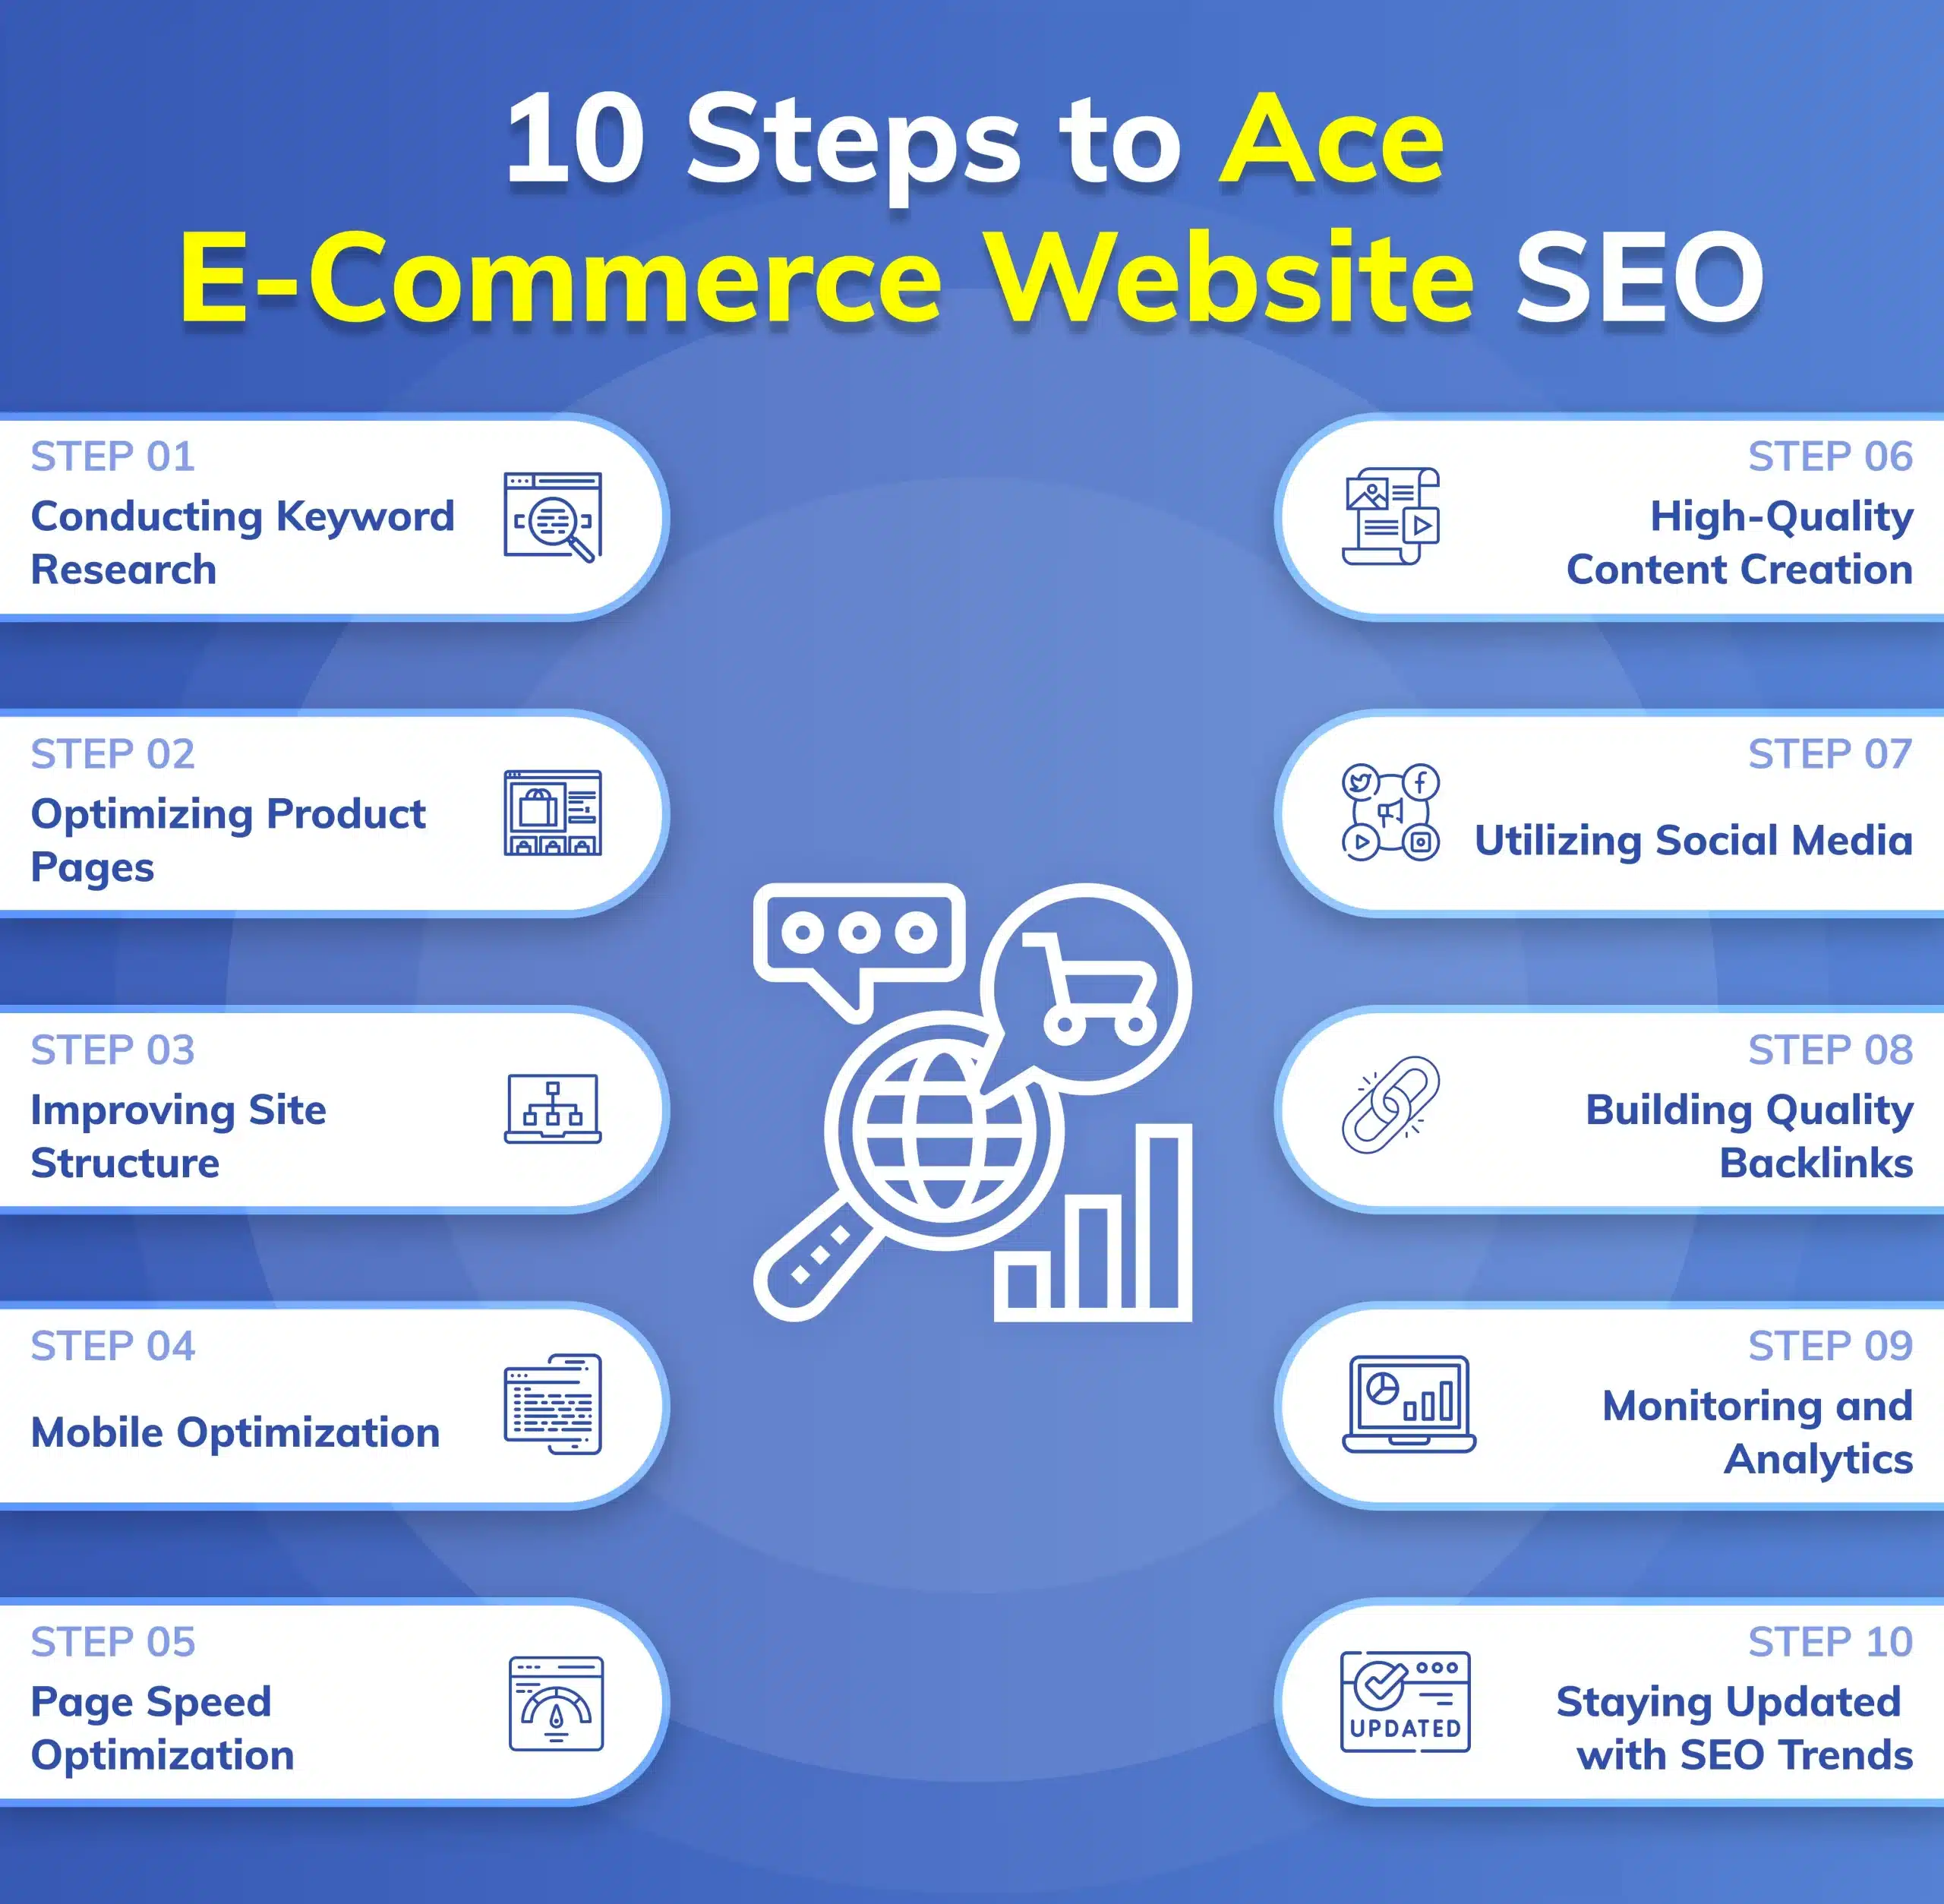 Steps for e-commerce website SEO